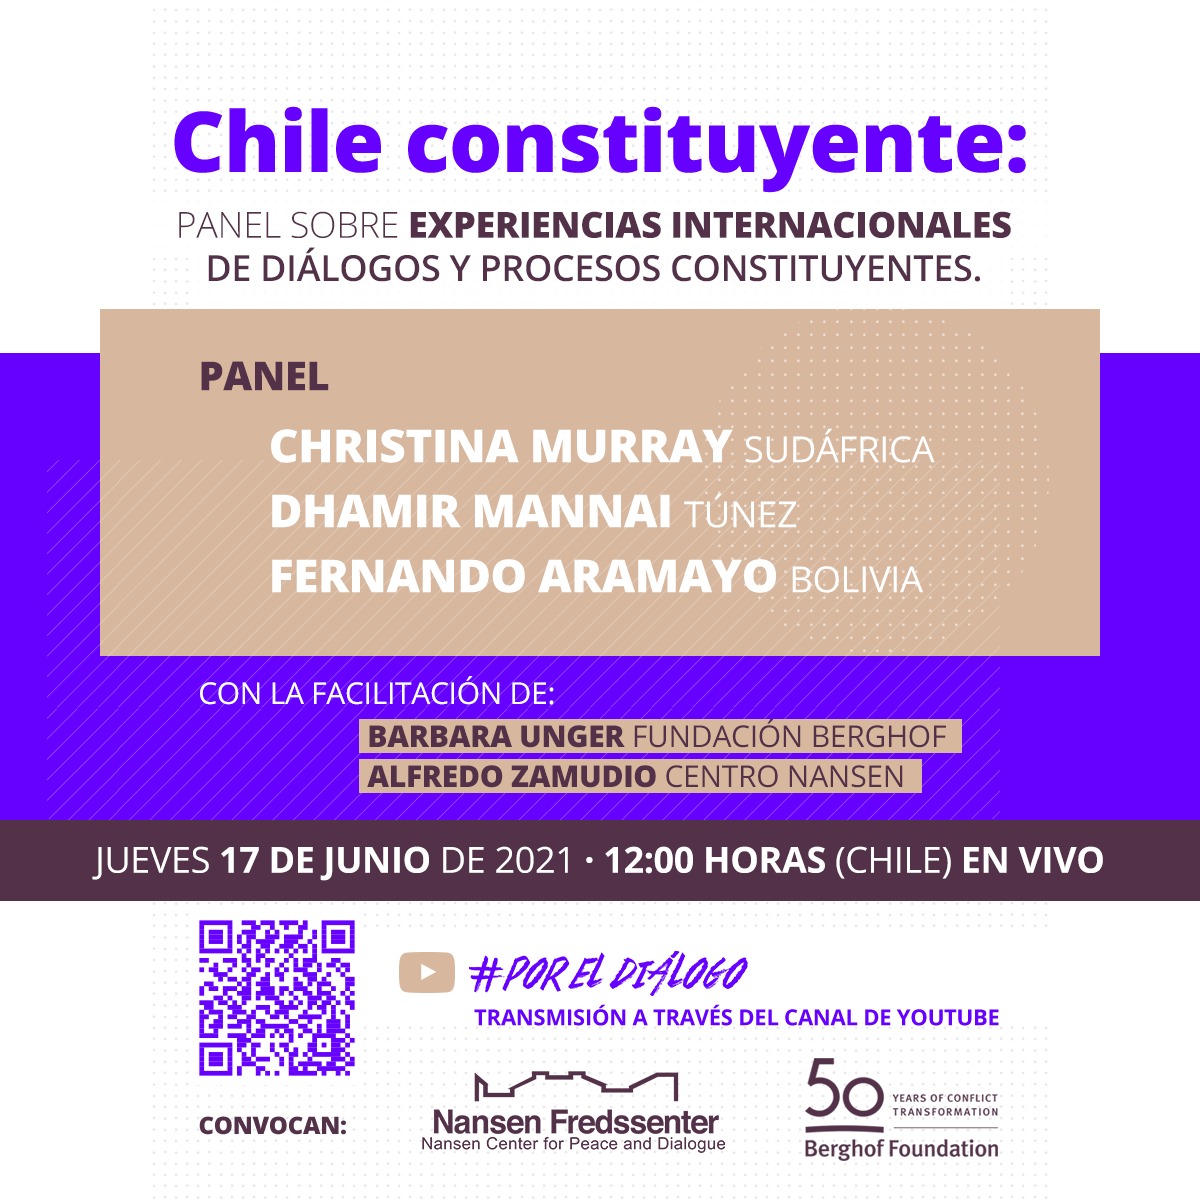 Chile constituyente: Panel sobre experiencias internacionales de diálogos y procesos constituyentes